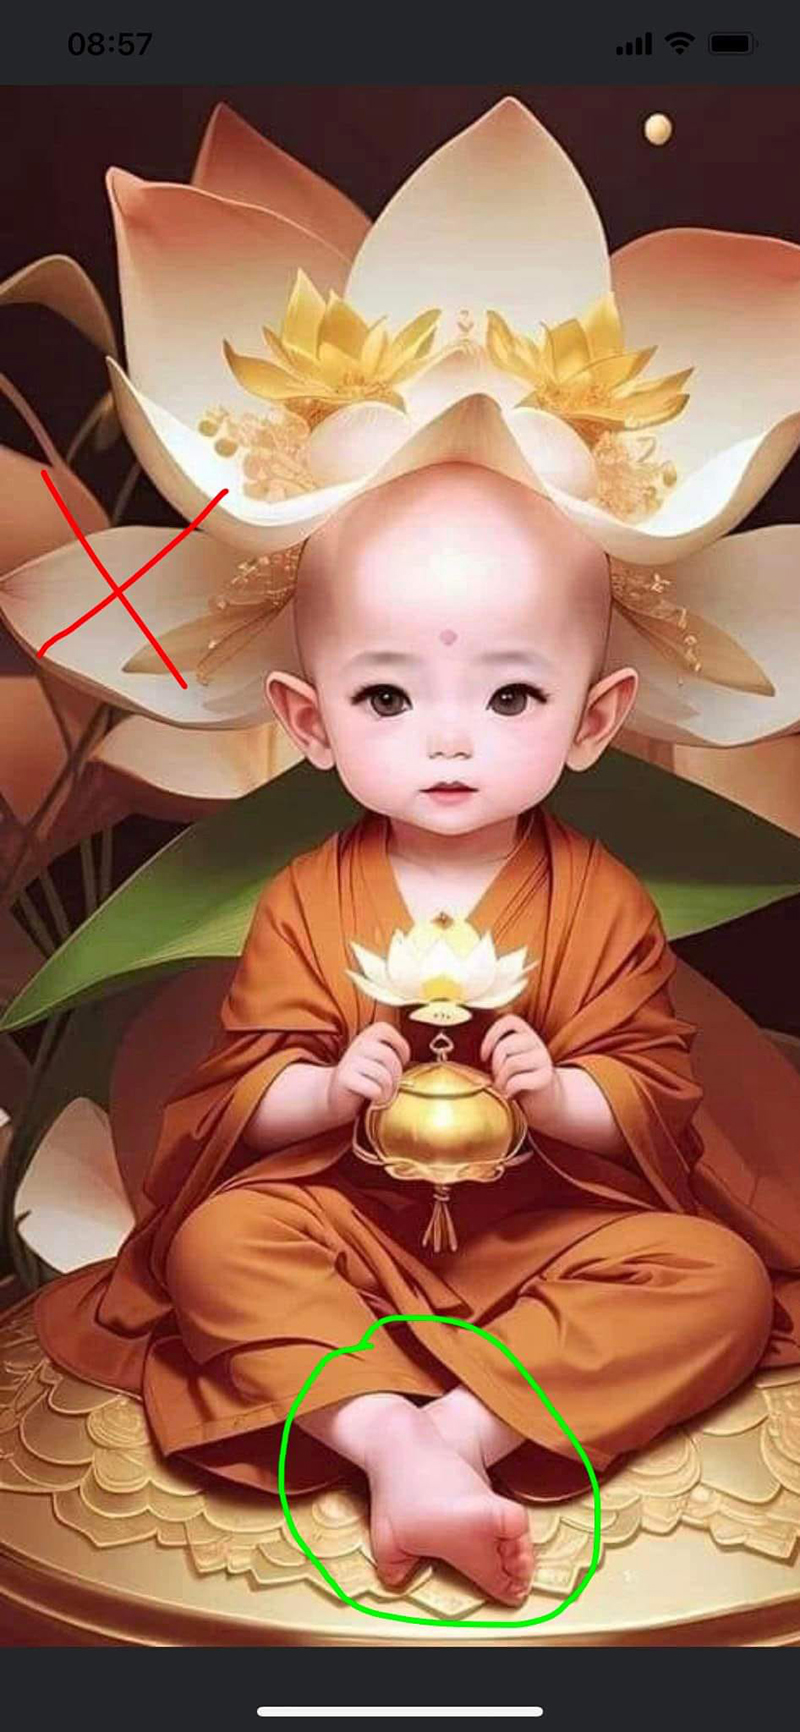 Chuyên gia chỉ ra những bức ảnh không tuân thủ theo quy tắc tướng tốt của Phật Bồ Tát và nên được xóa ngay vì dễ gây hiểu lầm